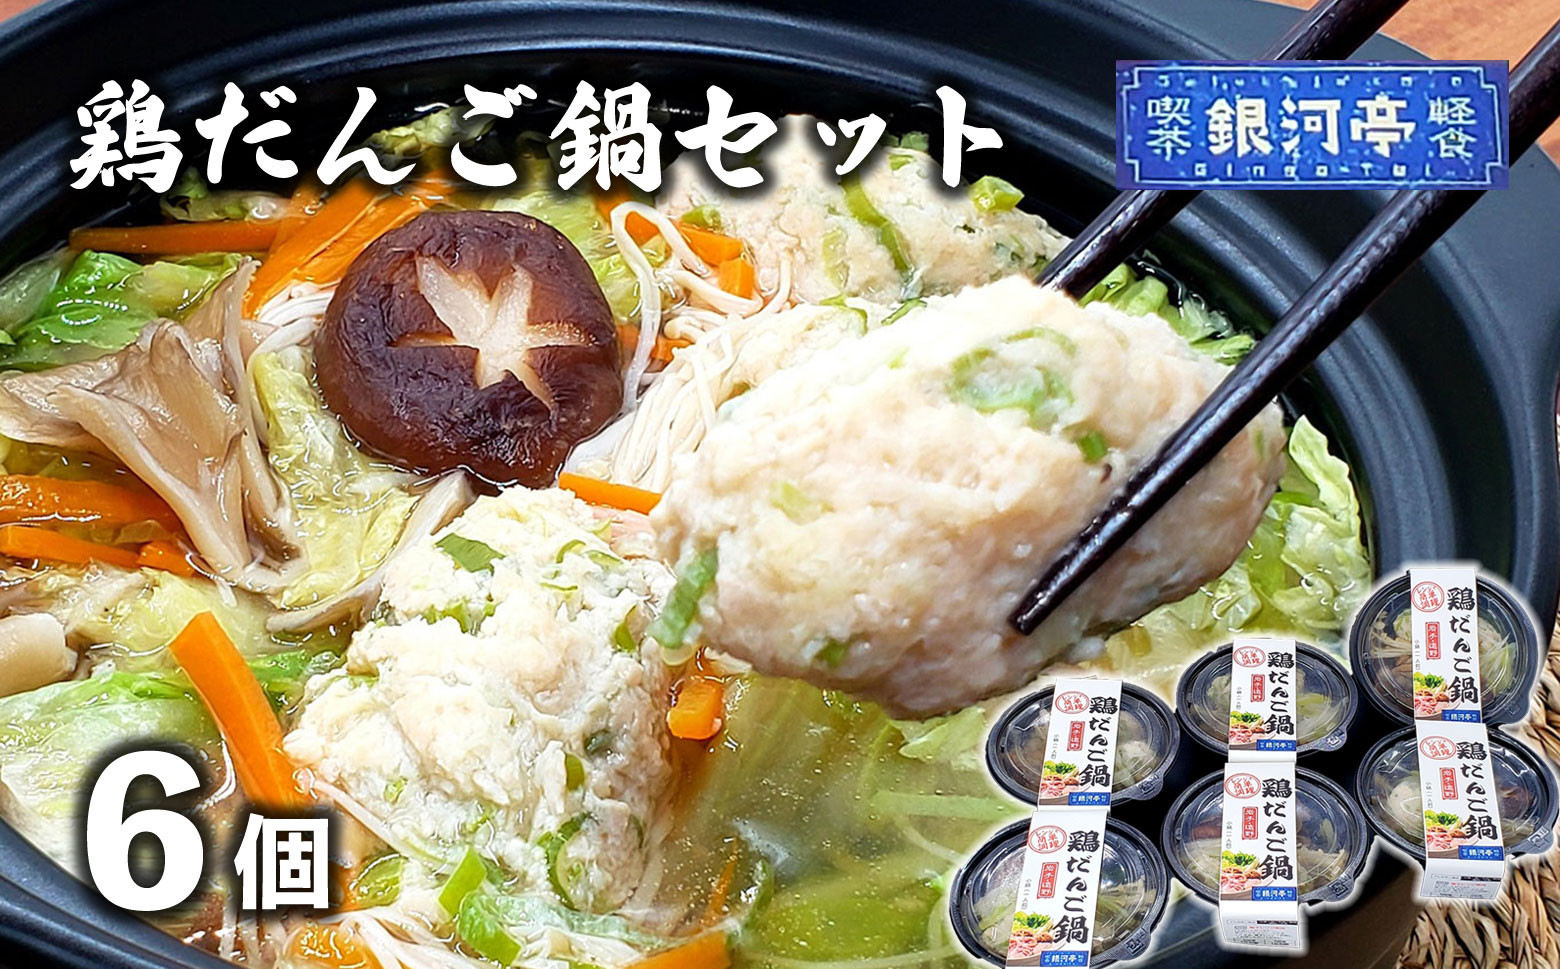 
【レストラン銀河亭】生姜の効いた「 鶏団子 鍋 」6個セット / 電子レンジ 温めるだけ 簡単調理 冷凍
